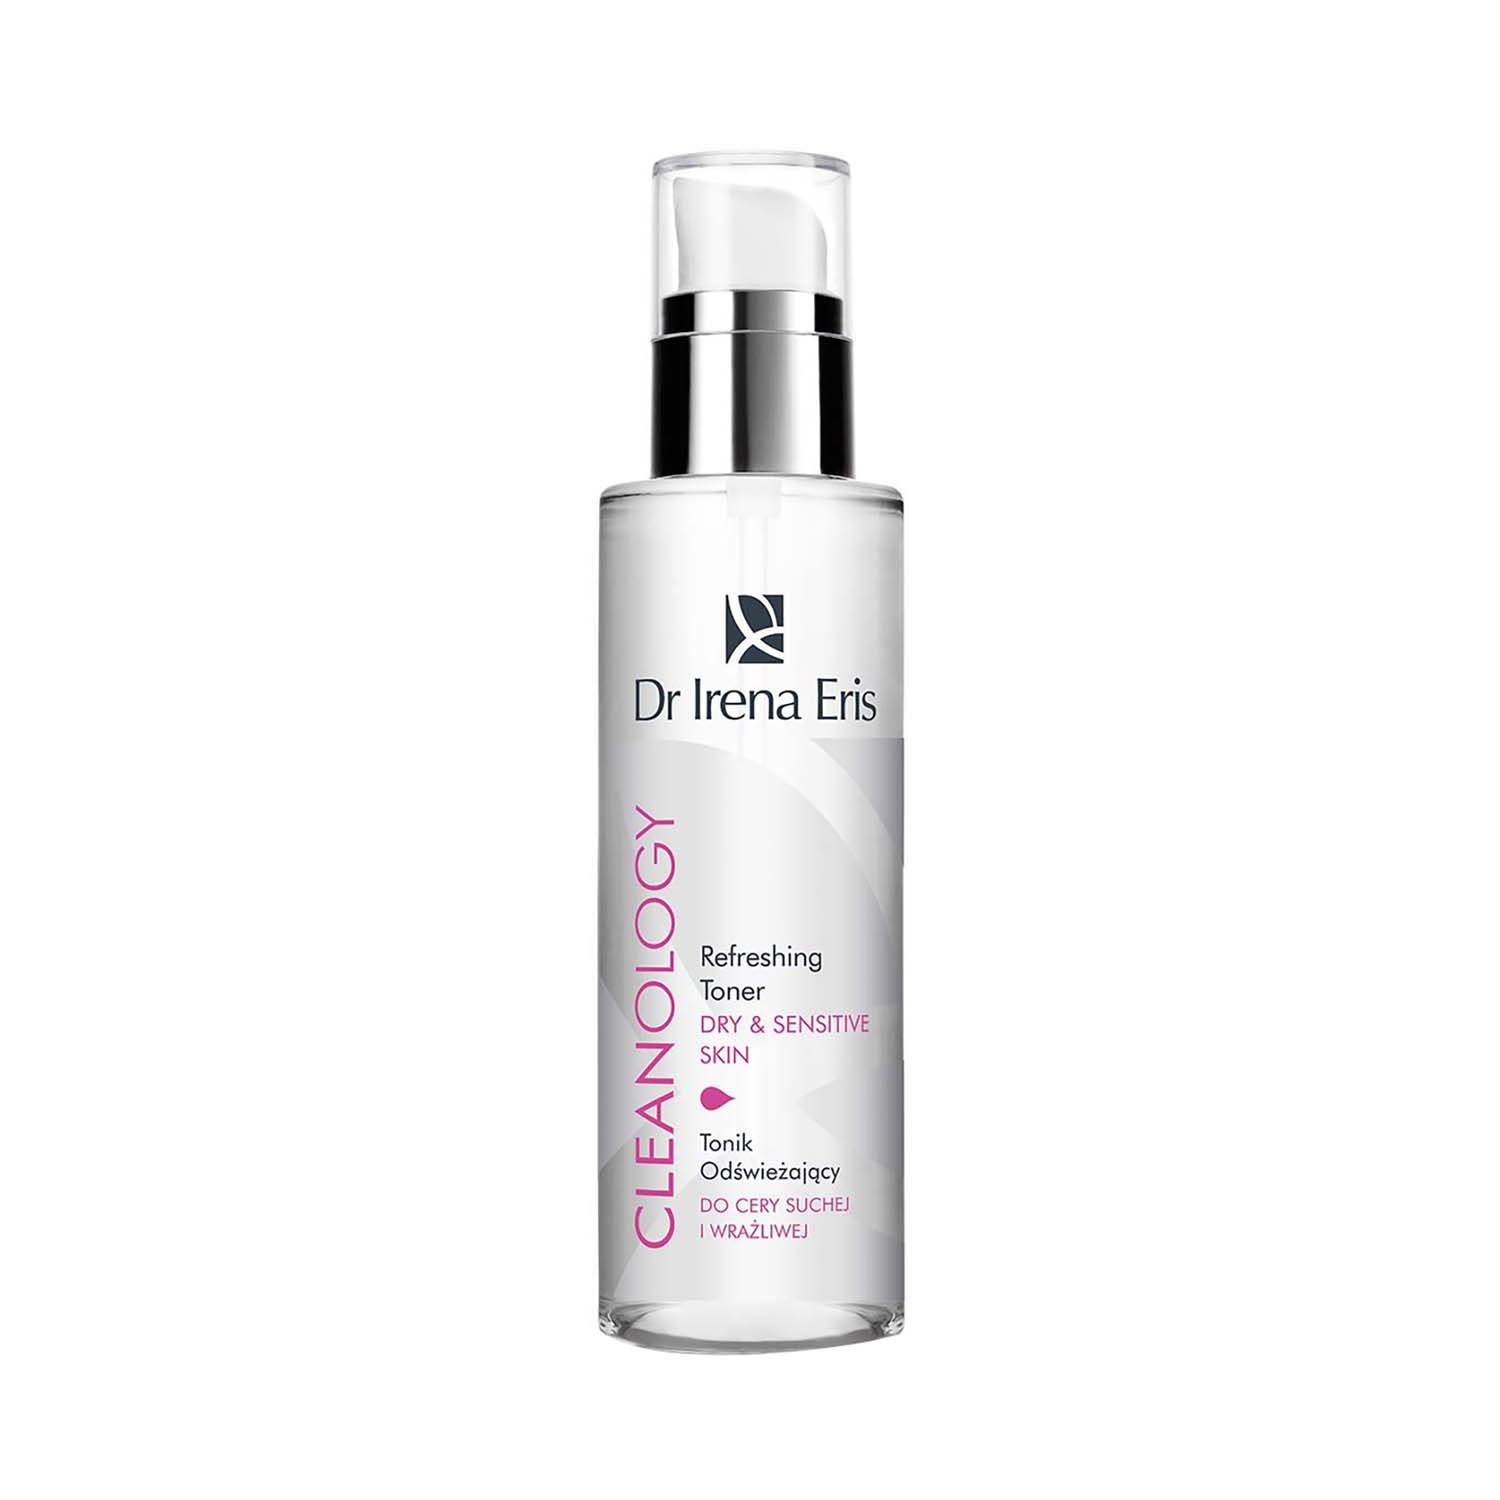 Dr Irena Eris | Dr Irena Eris Cleanology Refreshing Toner Dry & Sensitive Skin (200ml)